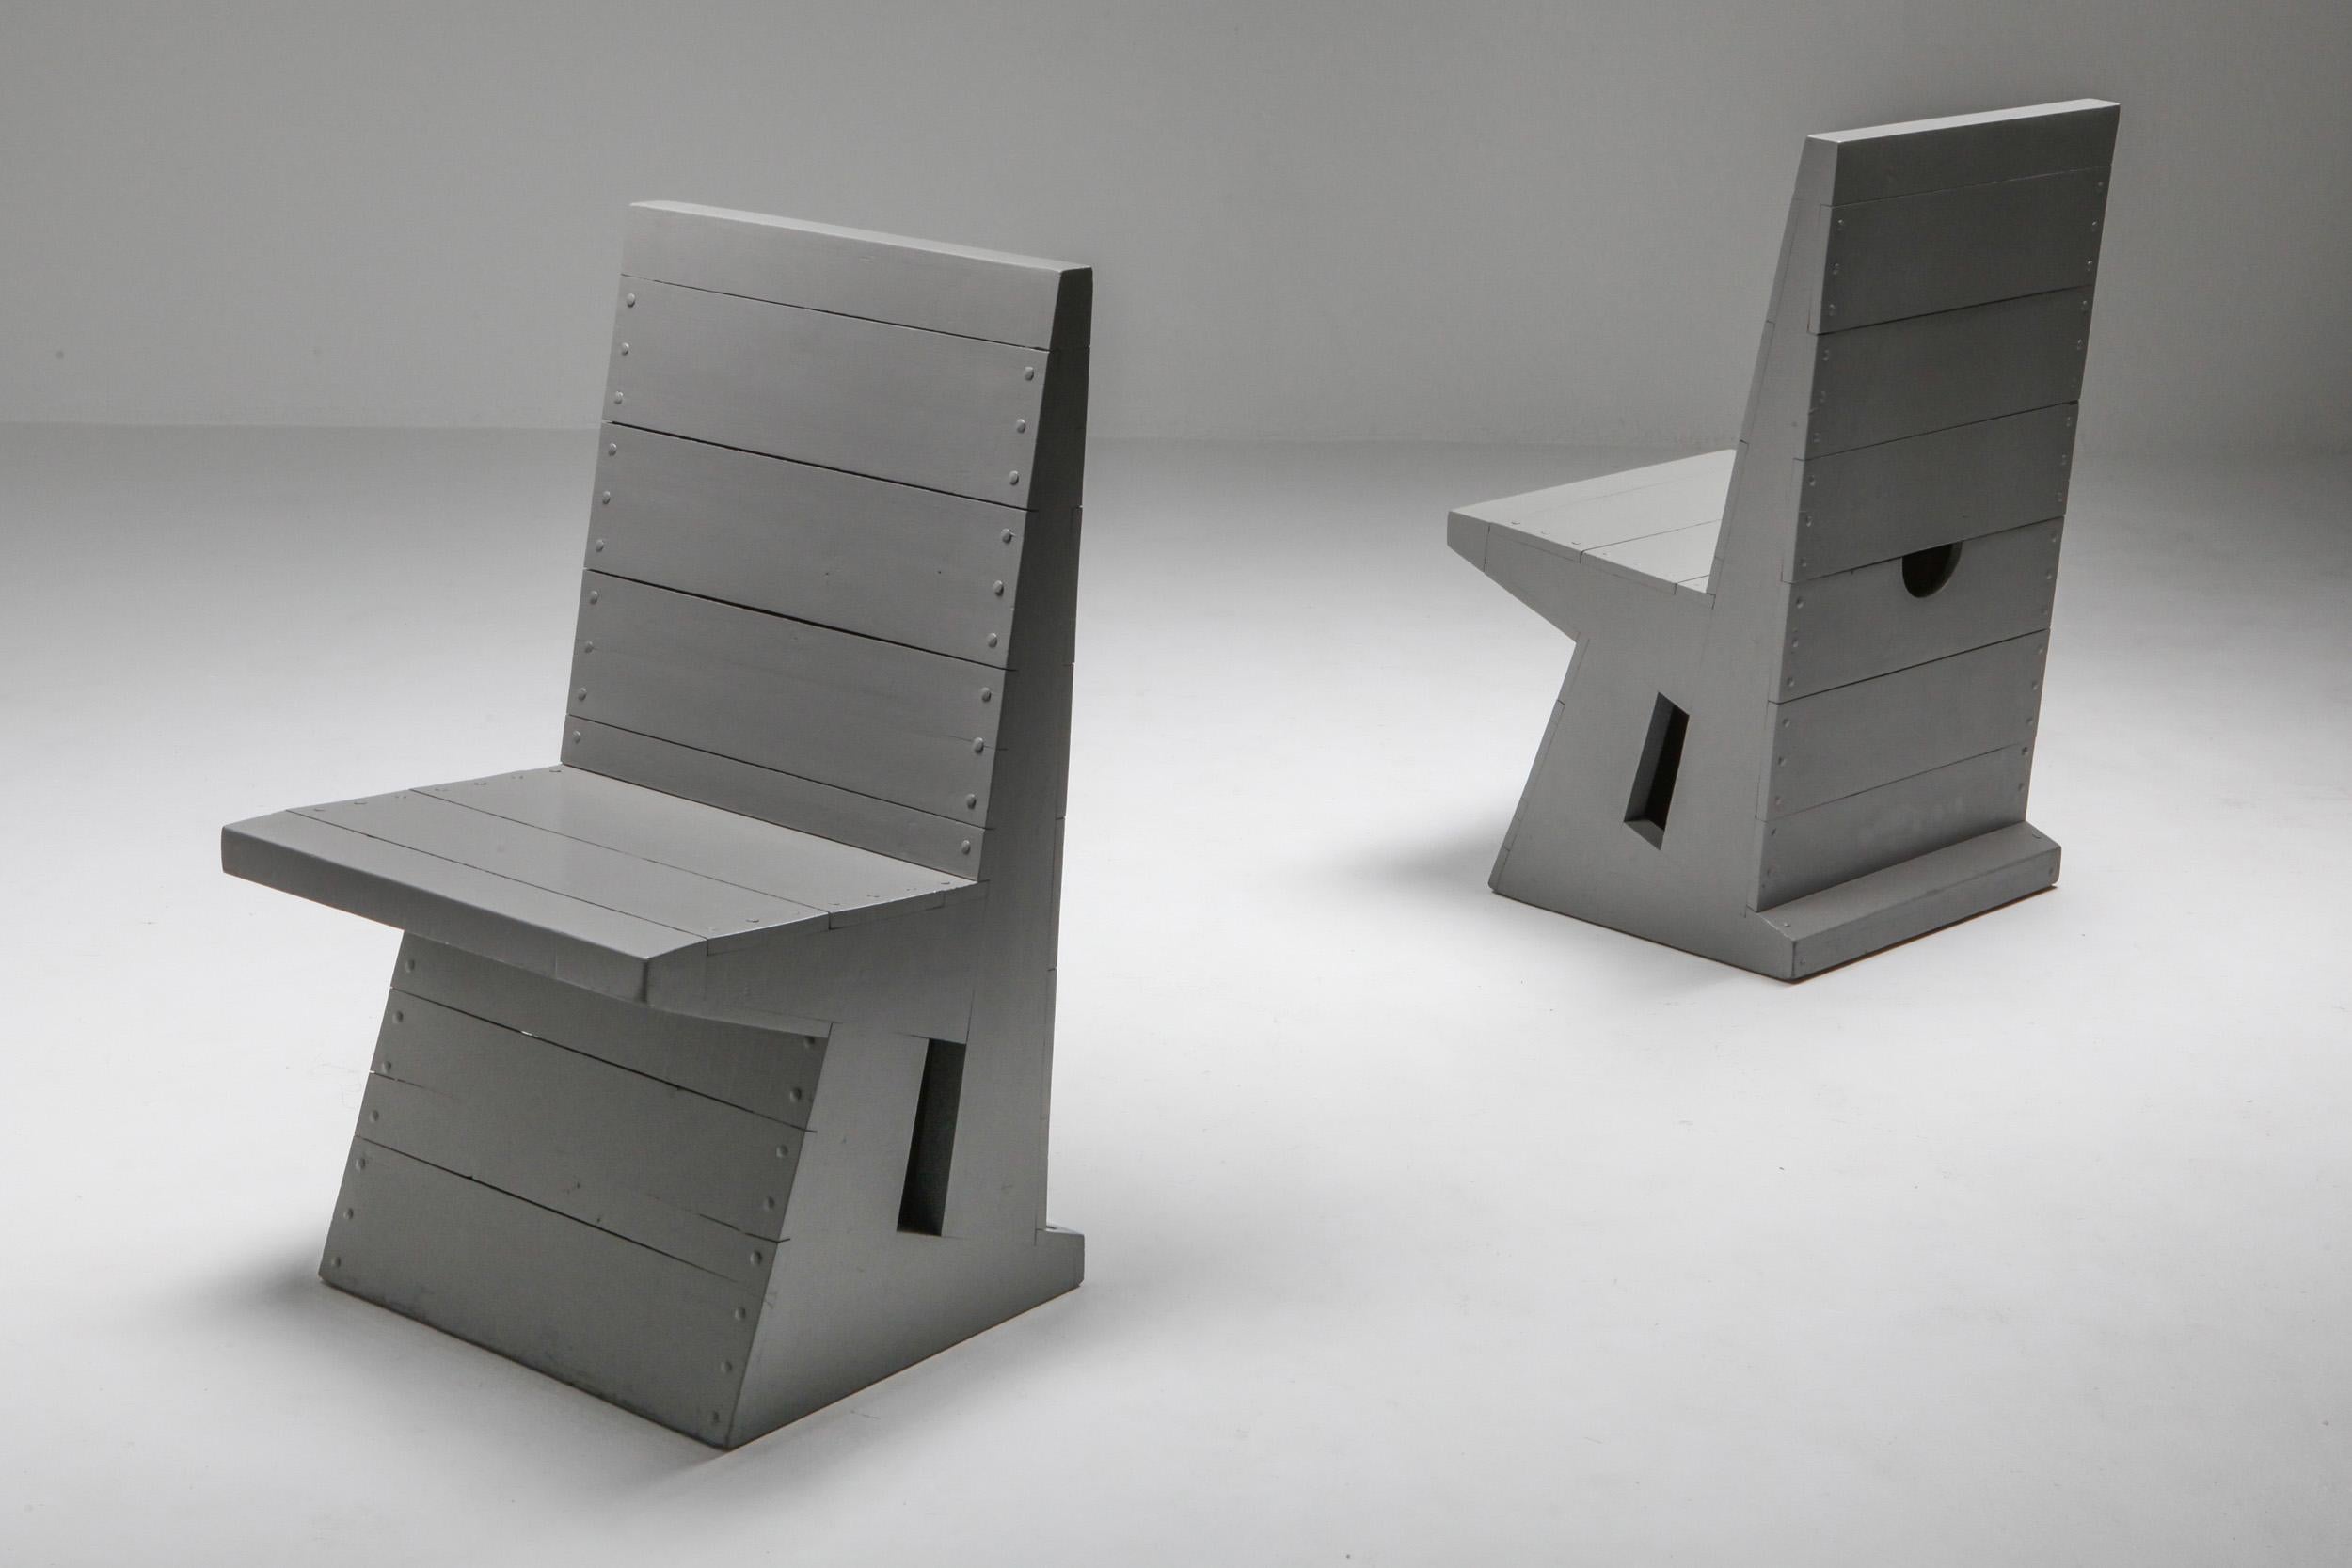 Wood Dom Hans Van Der Laan Chairs, Bossche School, Dutch Design, 1960s For Sale